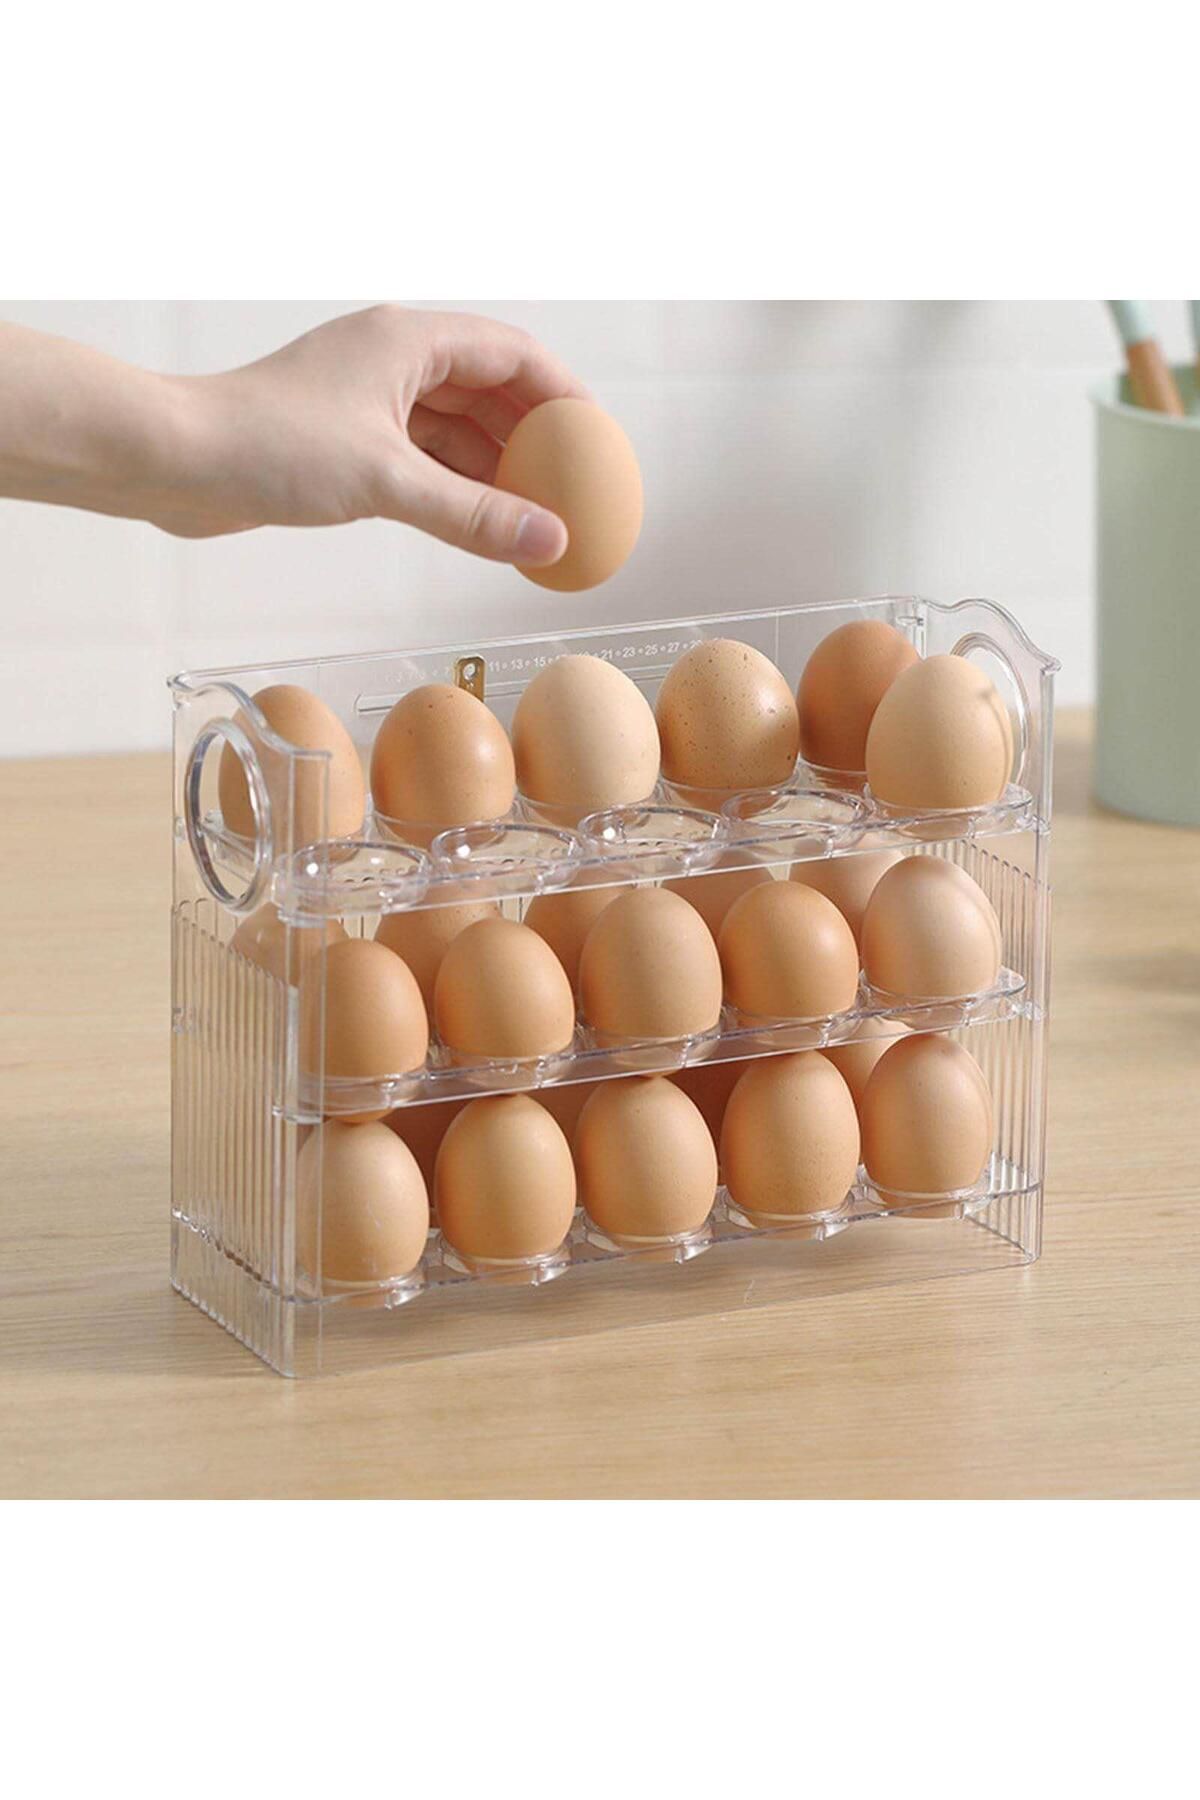 Eynel 3 Katlı Yumurtalık Buzdolabı Organizeri Saklama Kabı 30 Bölmeli Raflı Yumurta Kutusu Düzenleyici